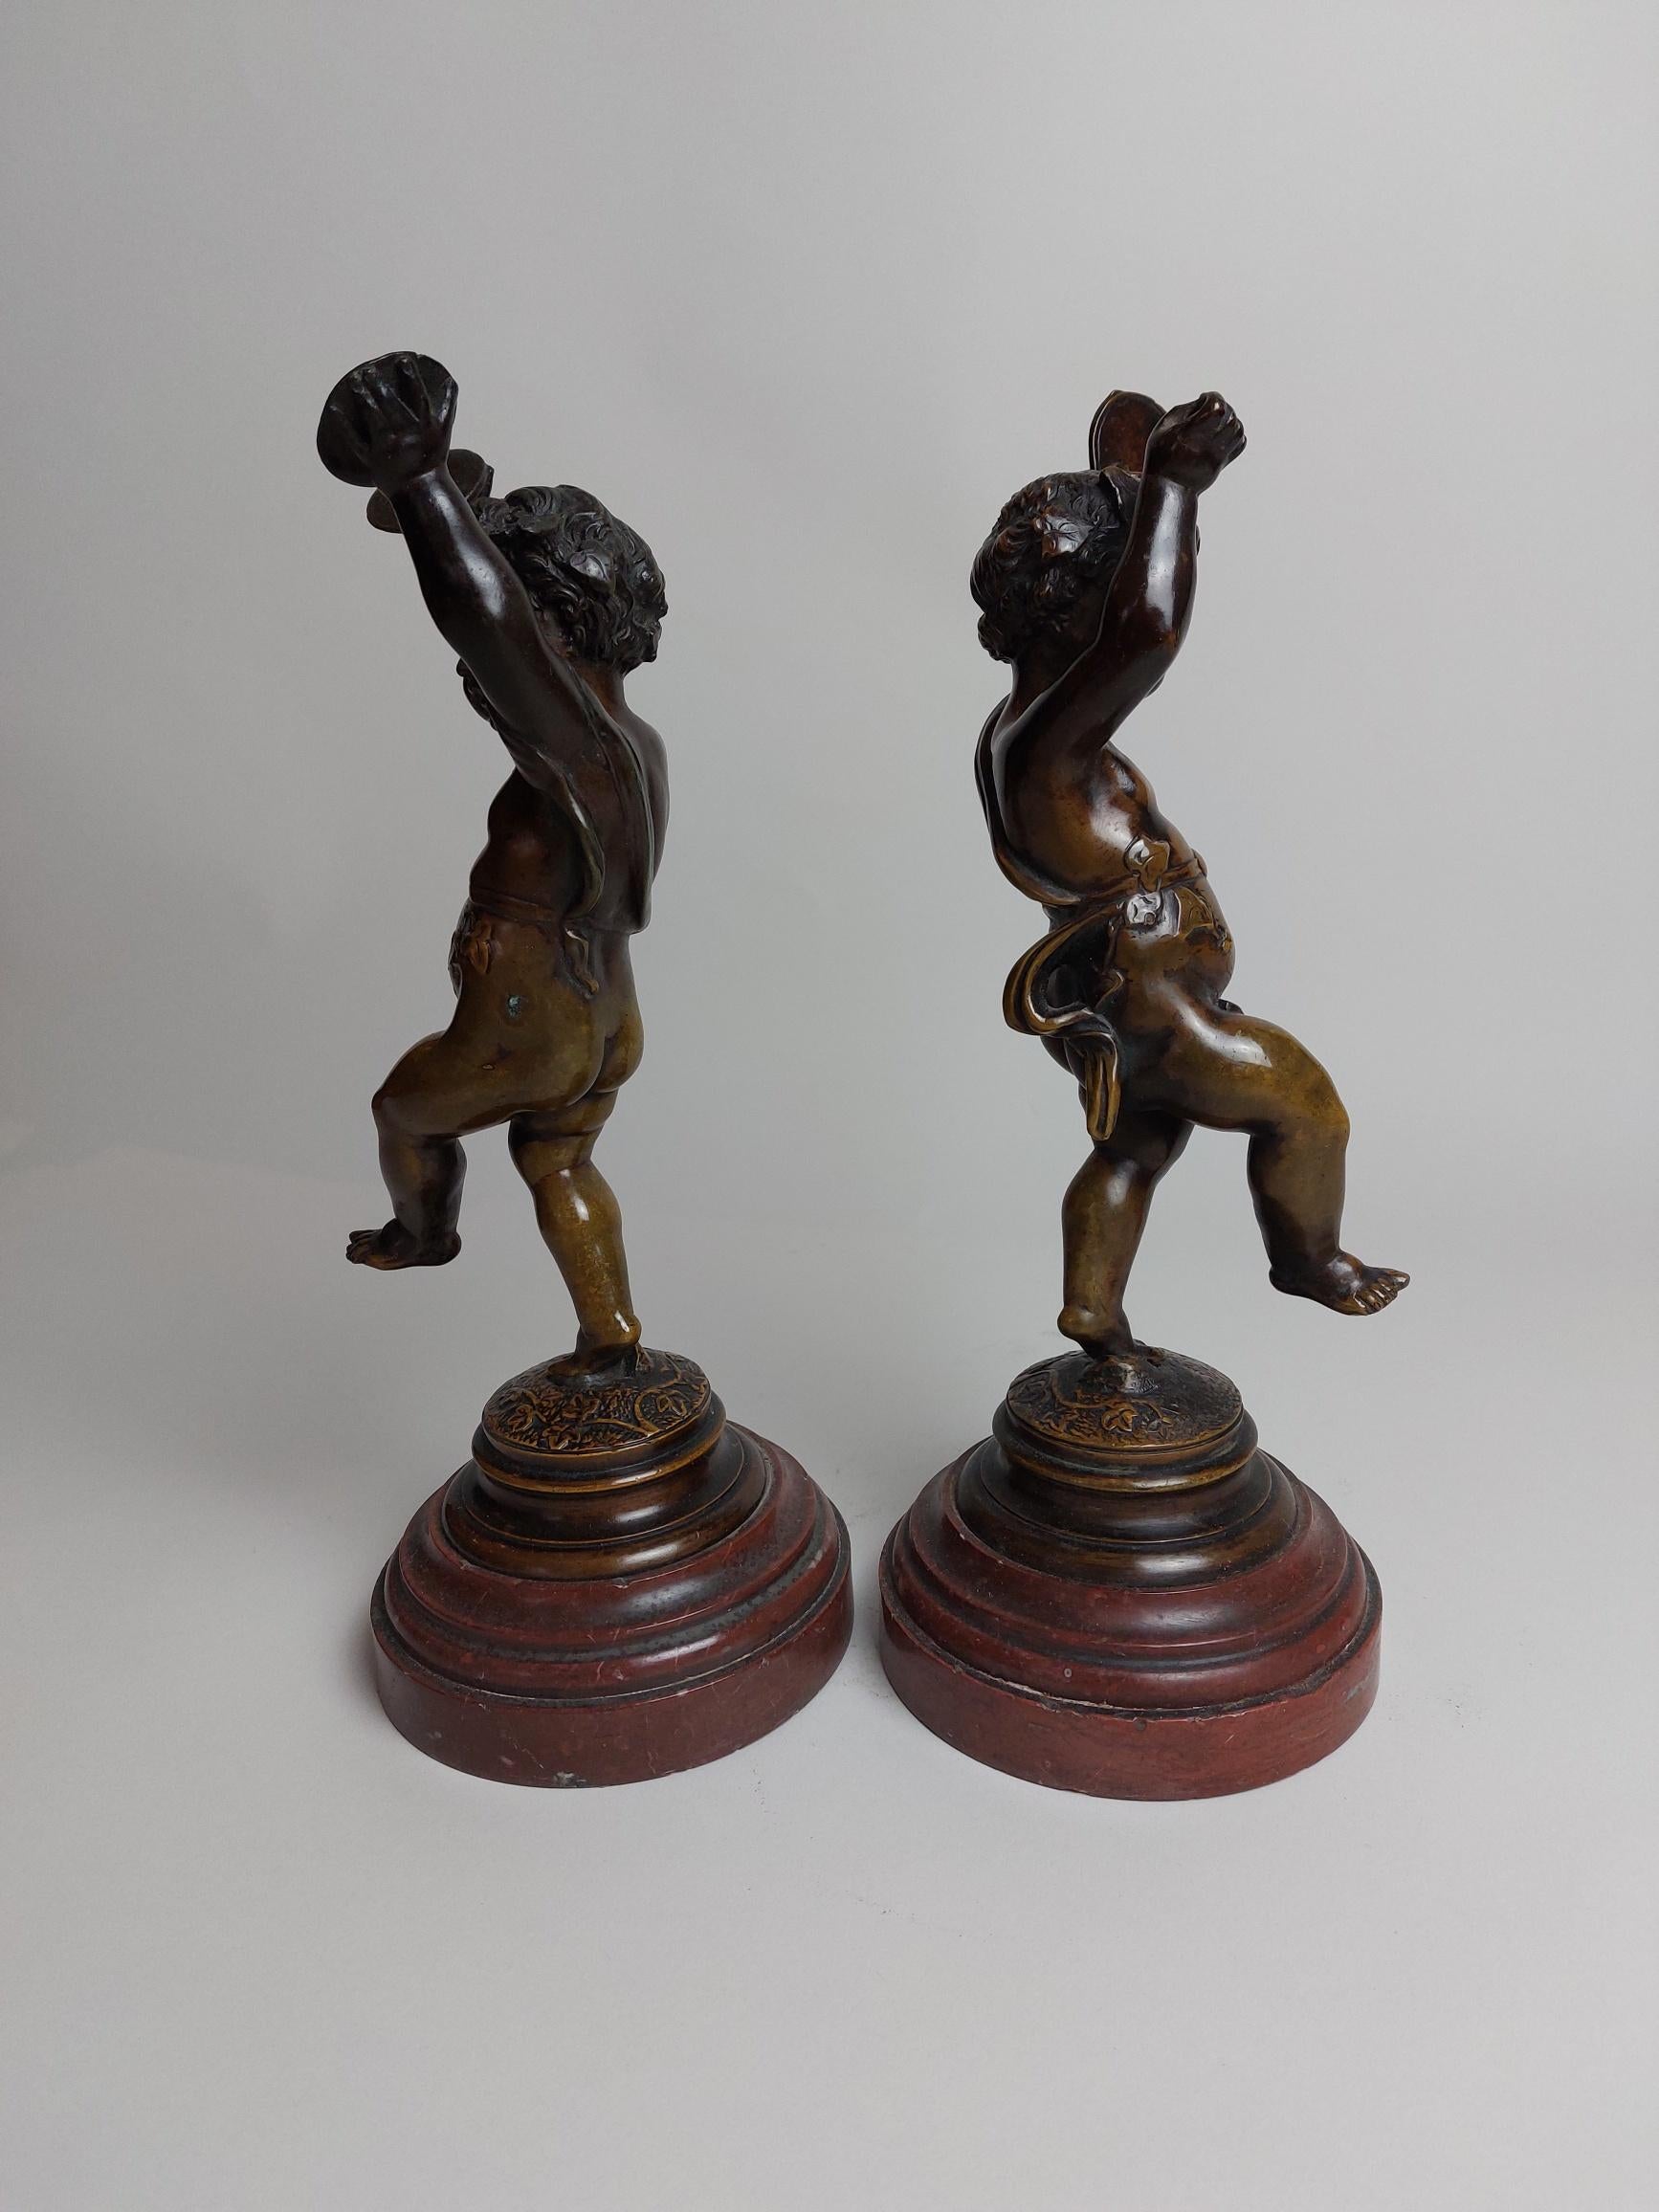 Néo-baroque Une joyeuse paire de chérubins (putti) en bronze du XIXe siècle dansant en vente